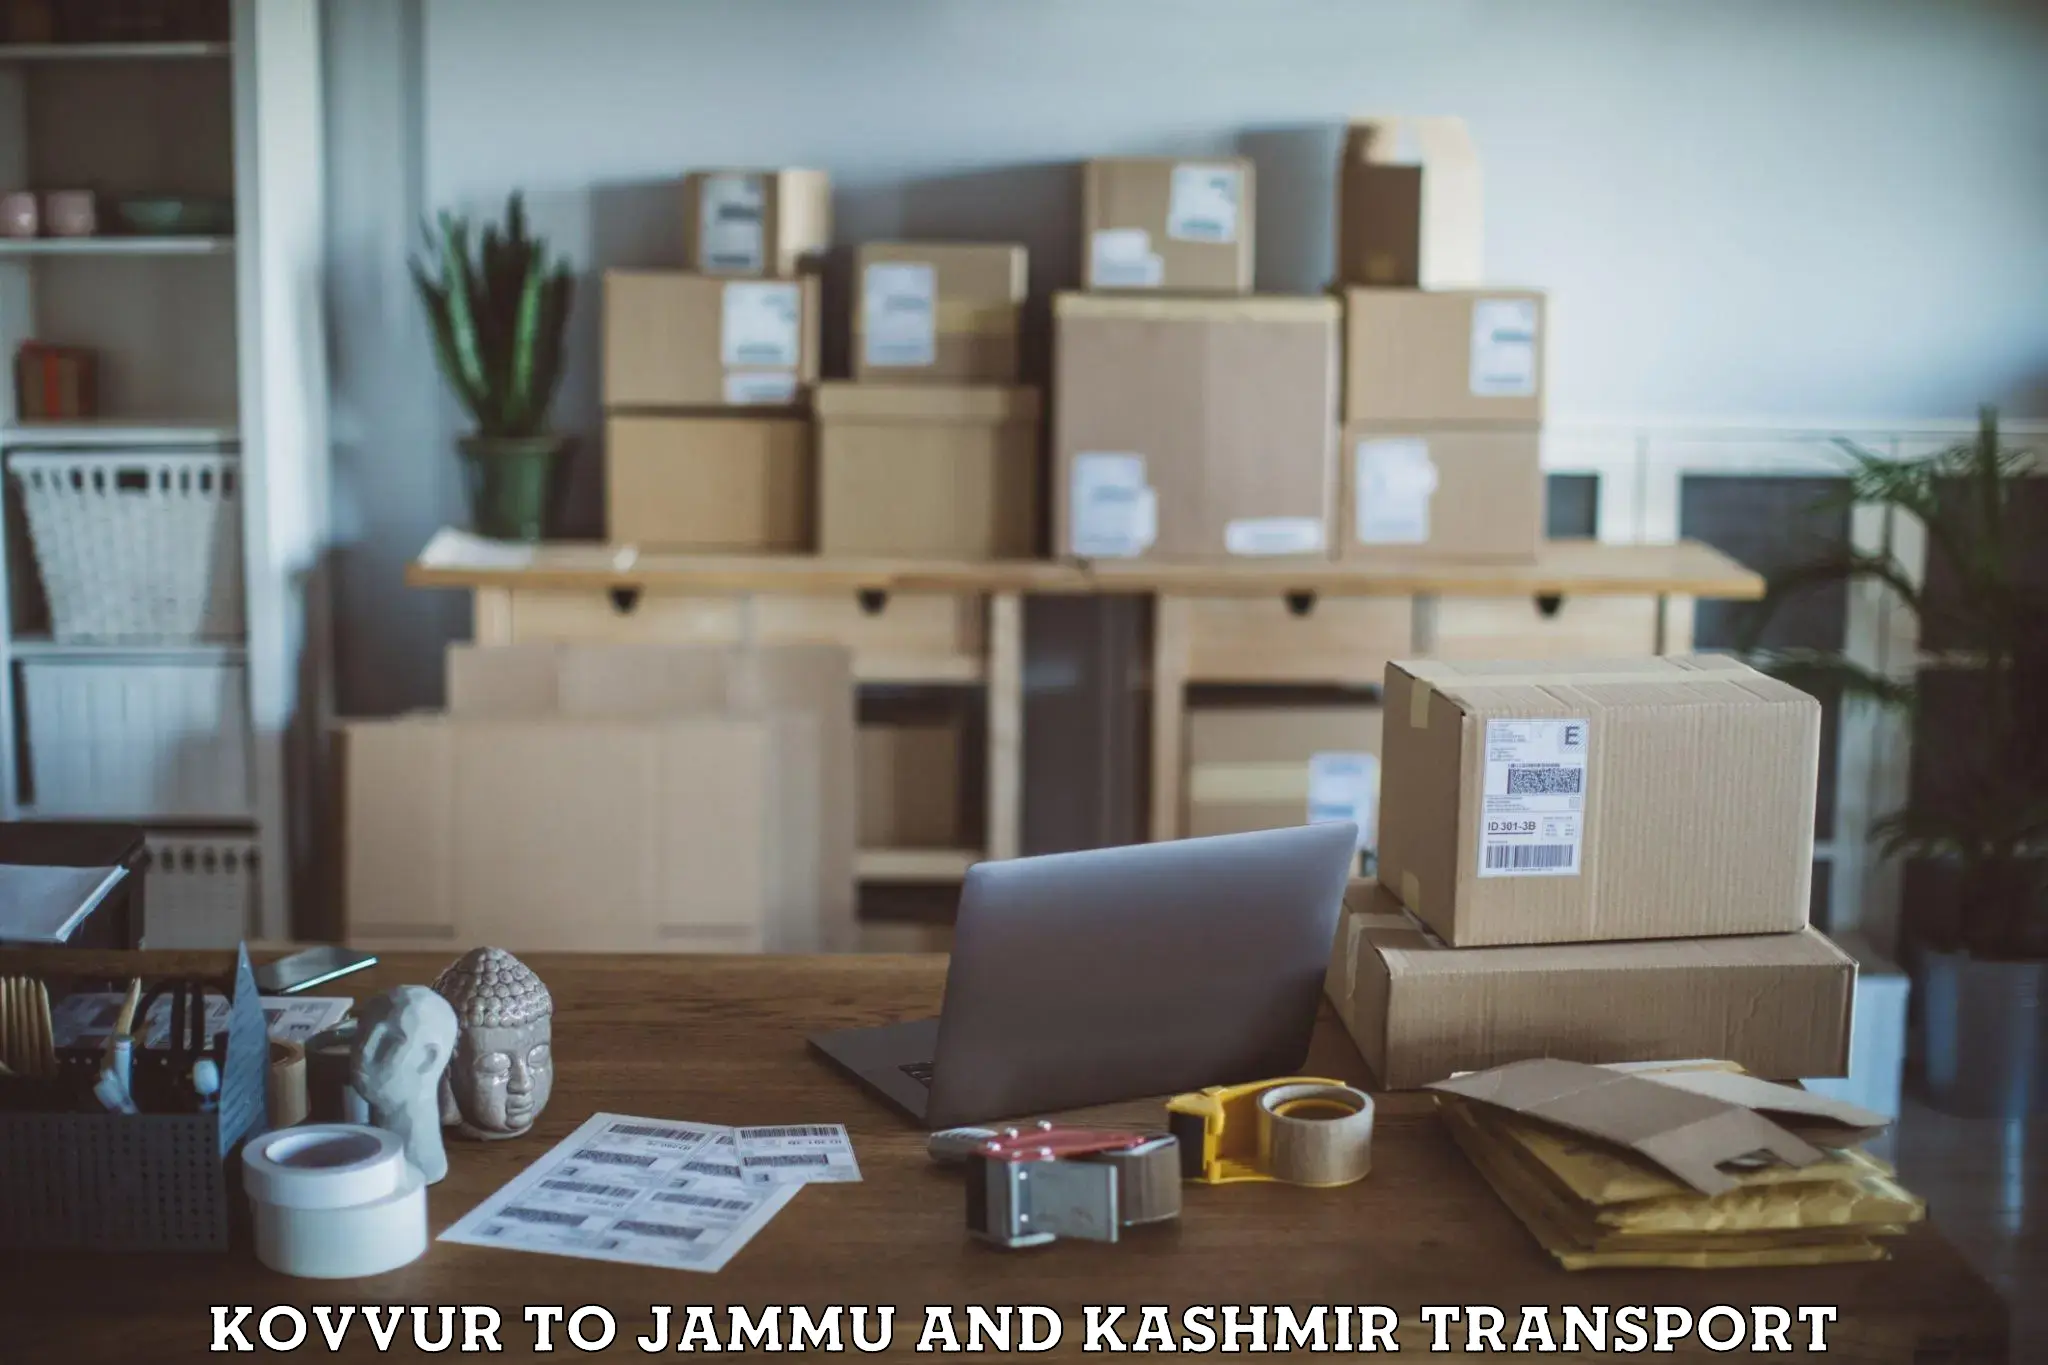 Online transport booking Kovvur to IIT Jammu